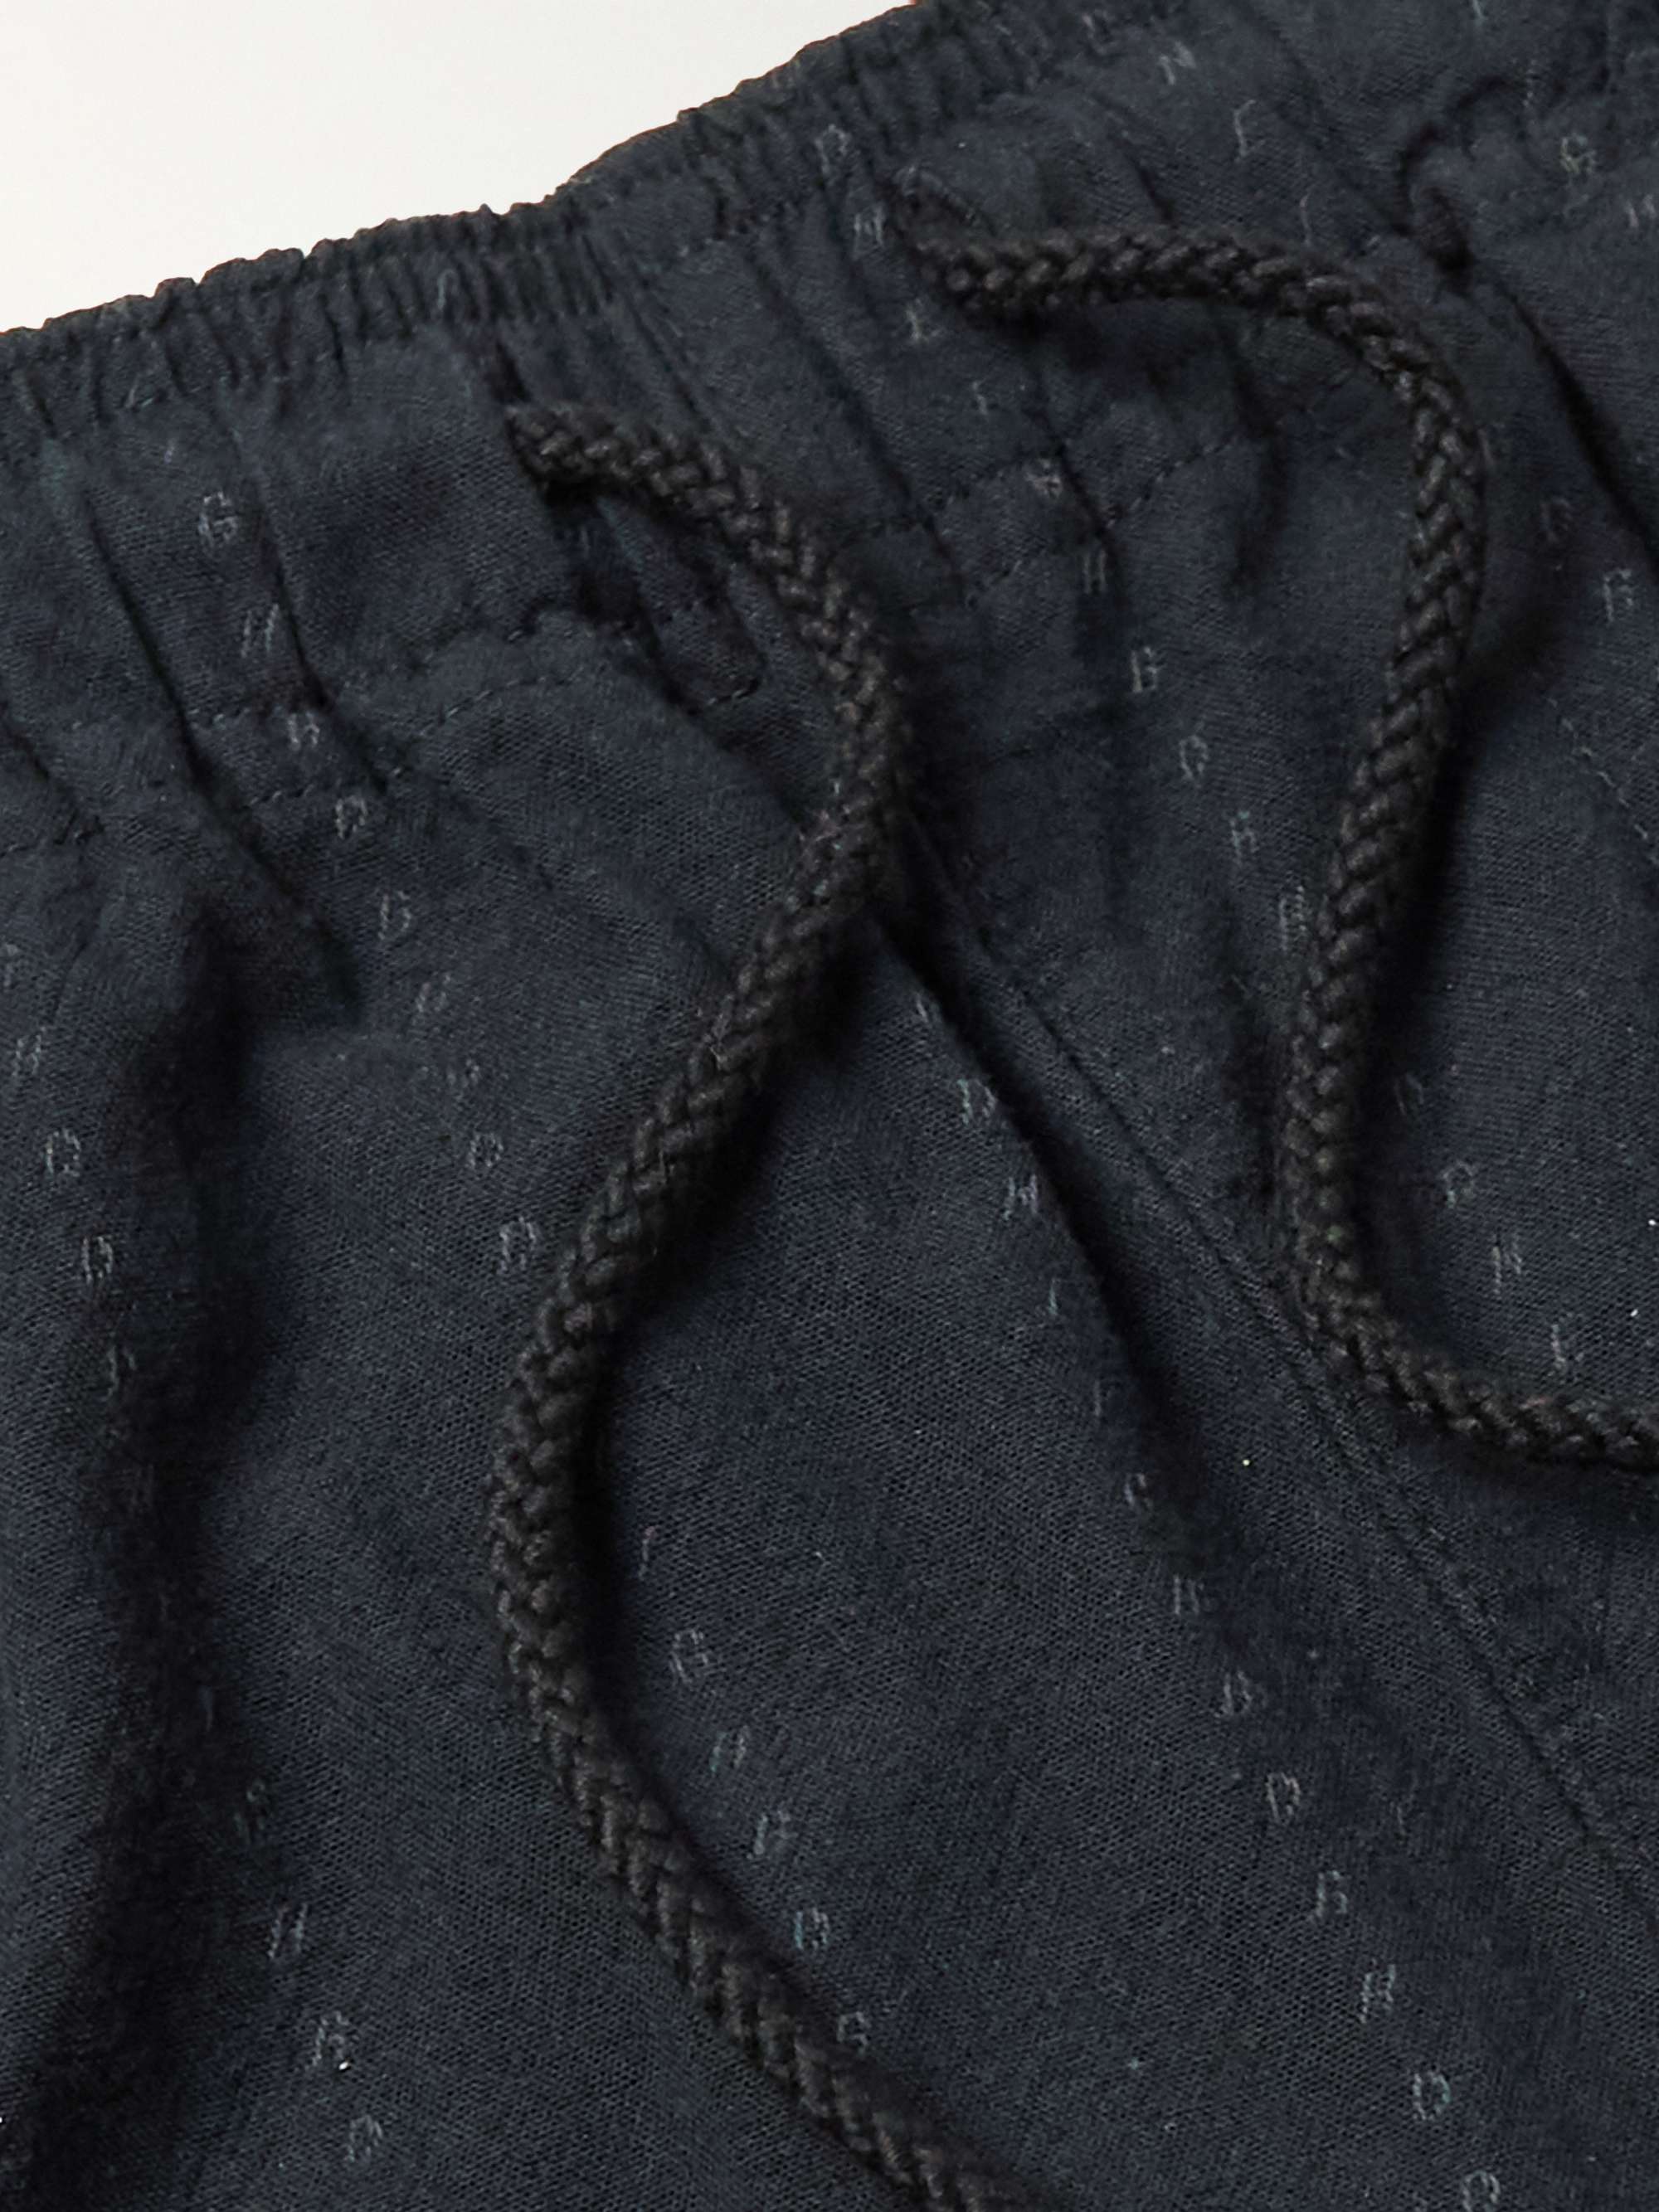 NEIGHBORHOOD Dobby Tapered Embroidered Cotton-Fleece Sweatpants